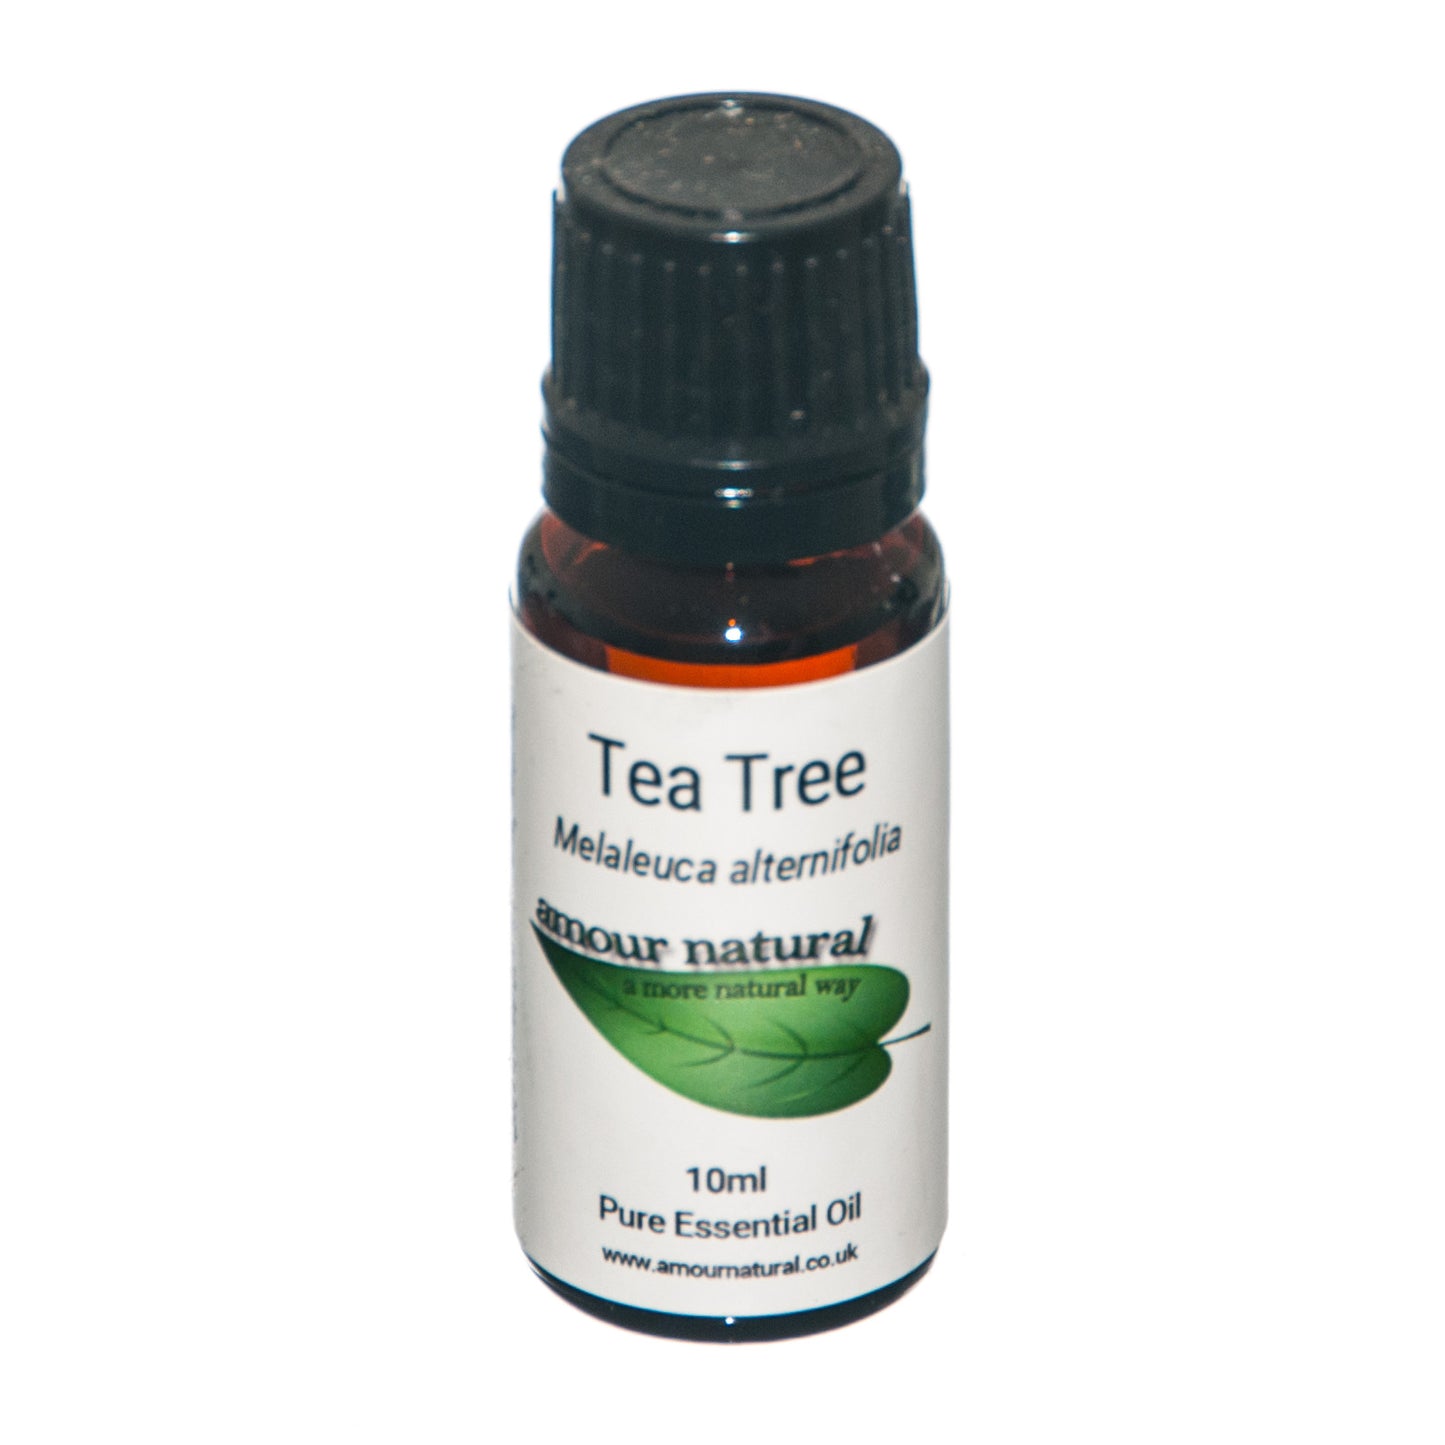 Tea Tree - Essential Oil